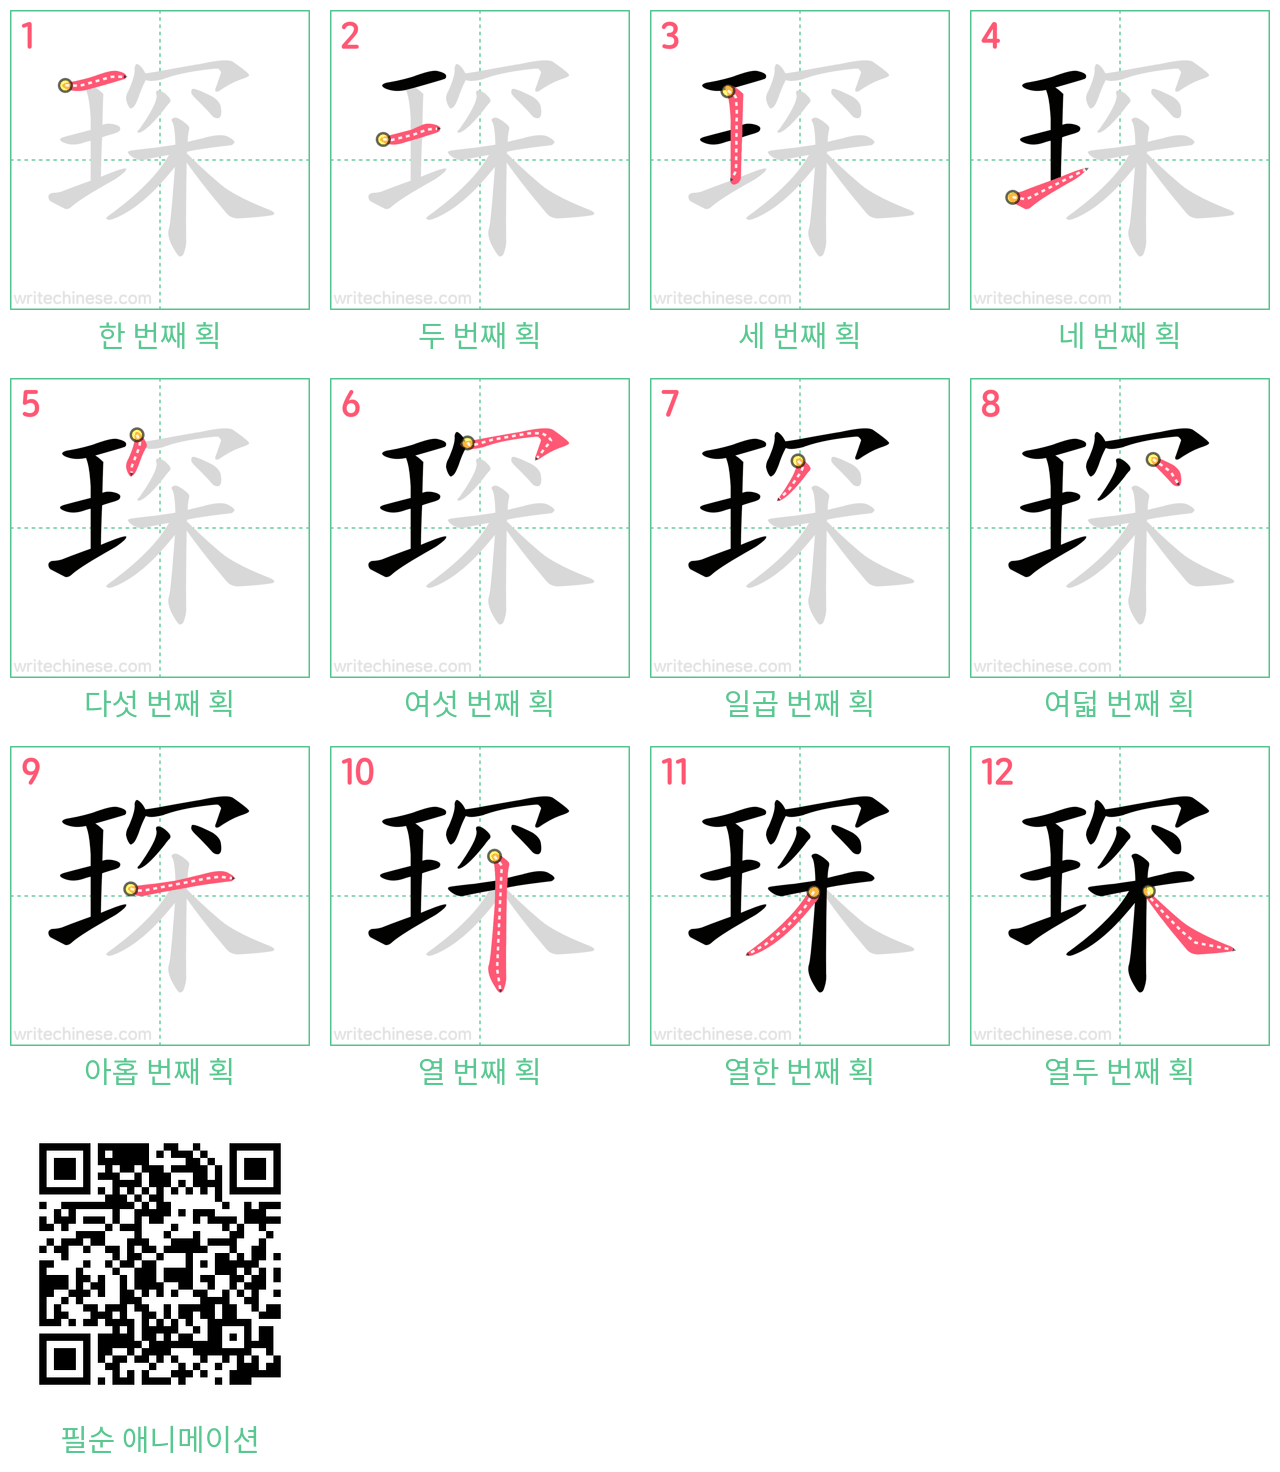 琛 step-by-step stroke order diagrams